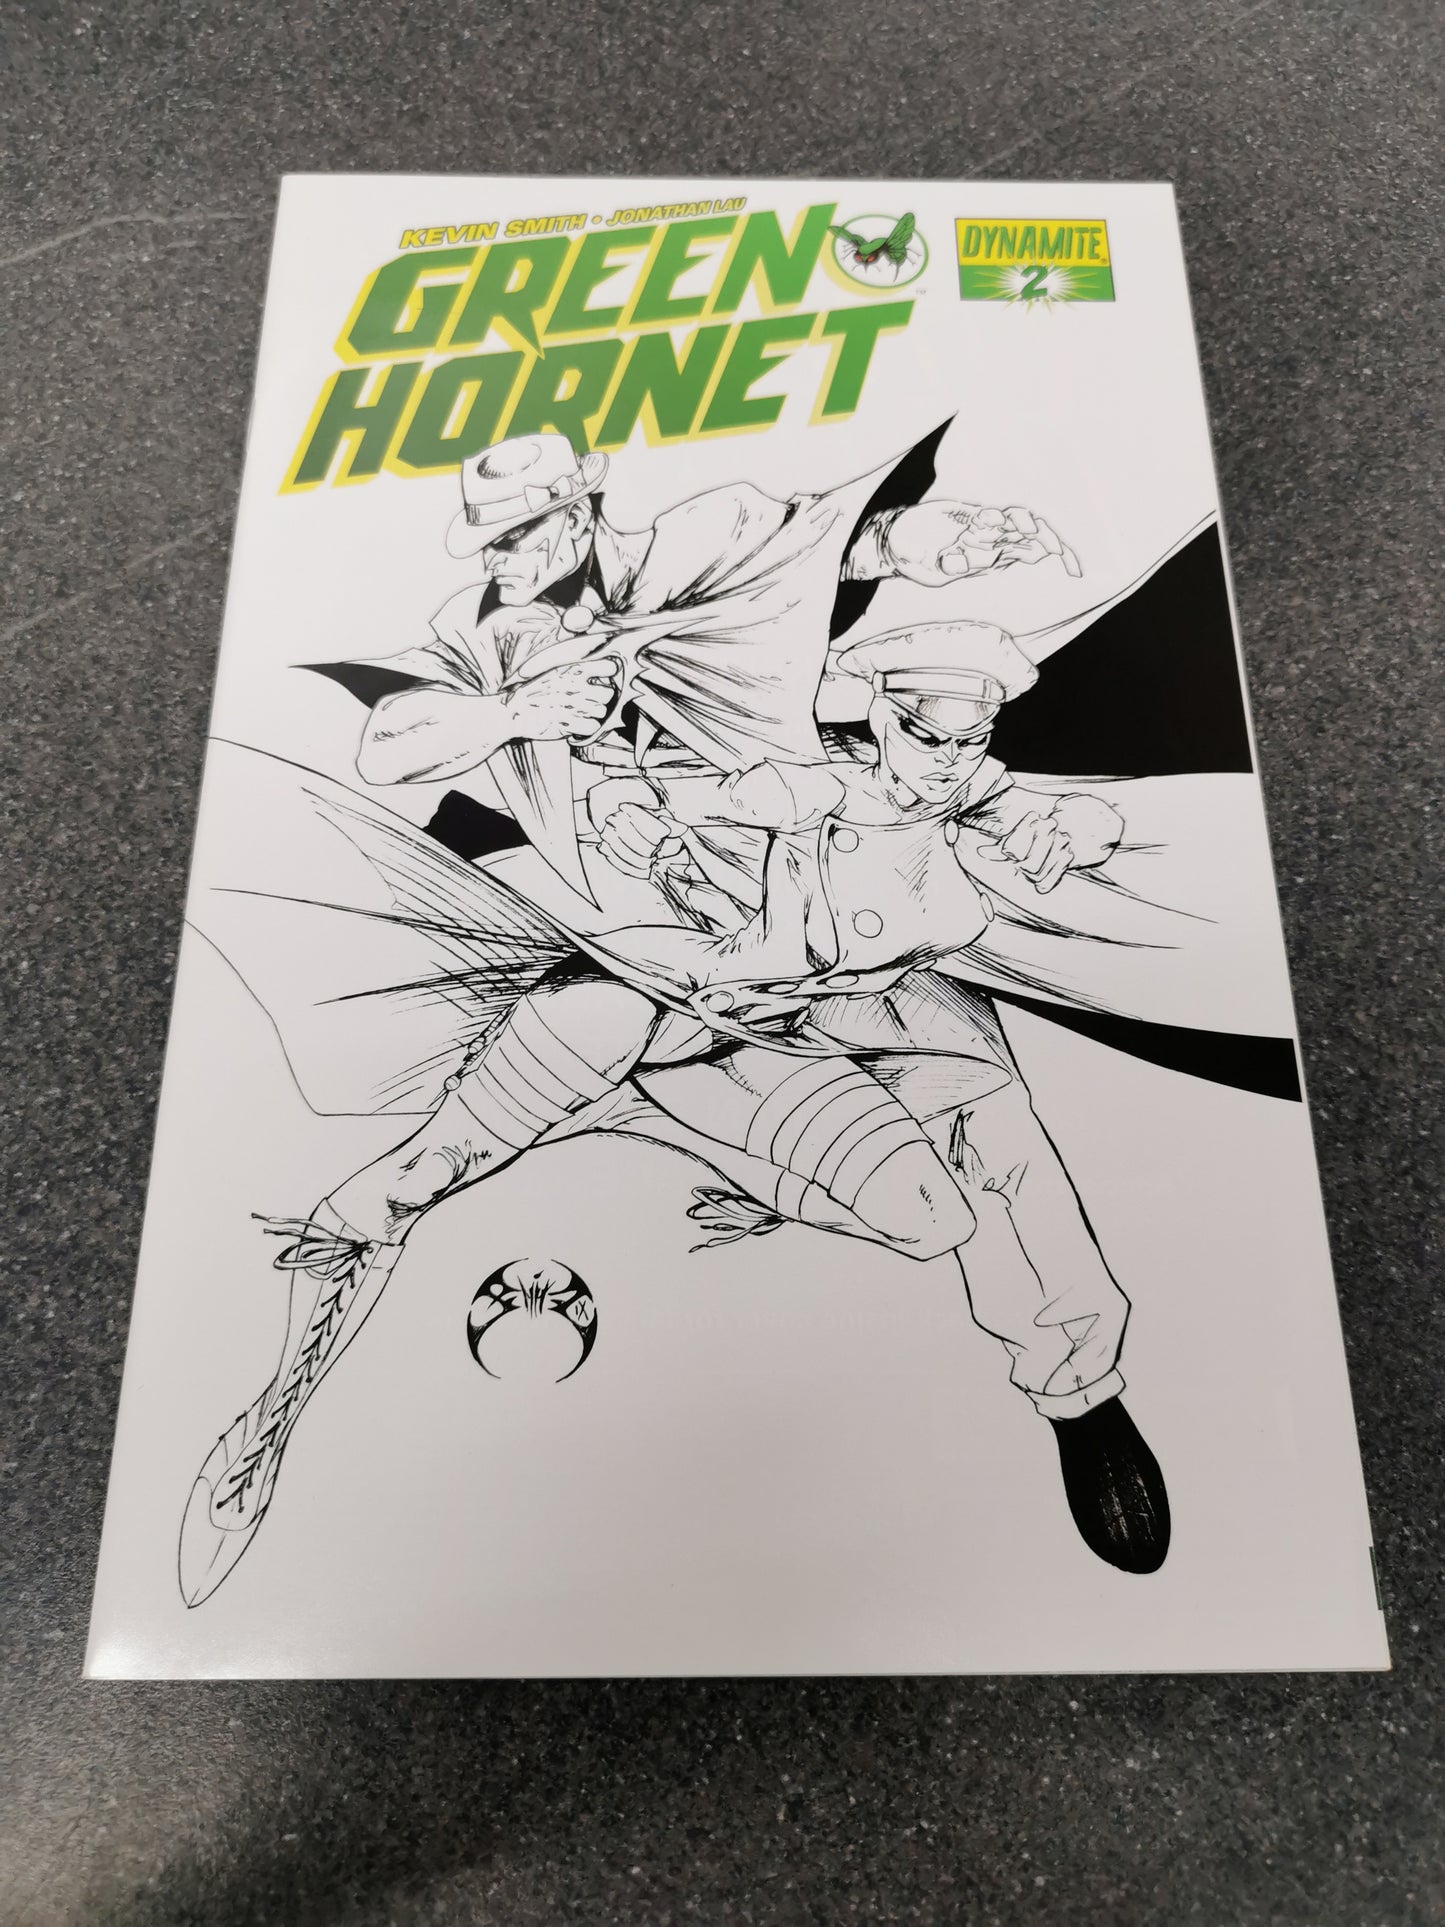 Green Hornet #2 variant 2010 Dynamite comic